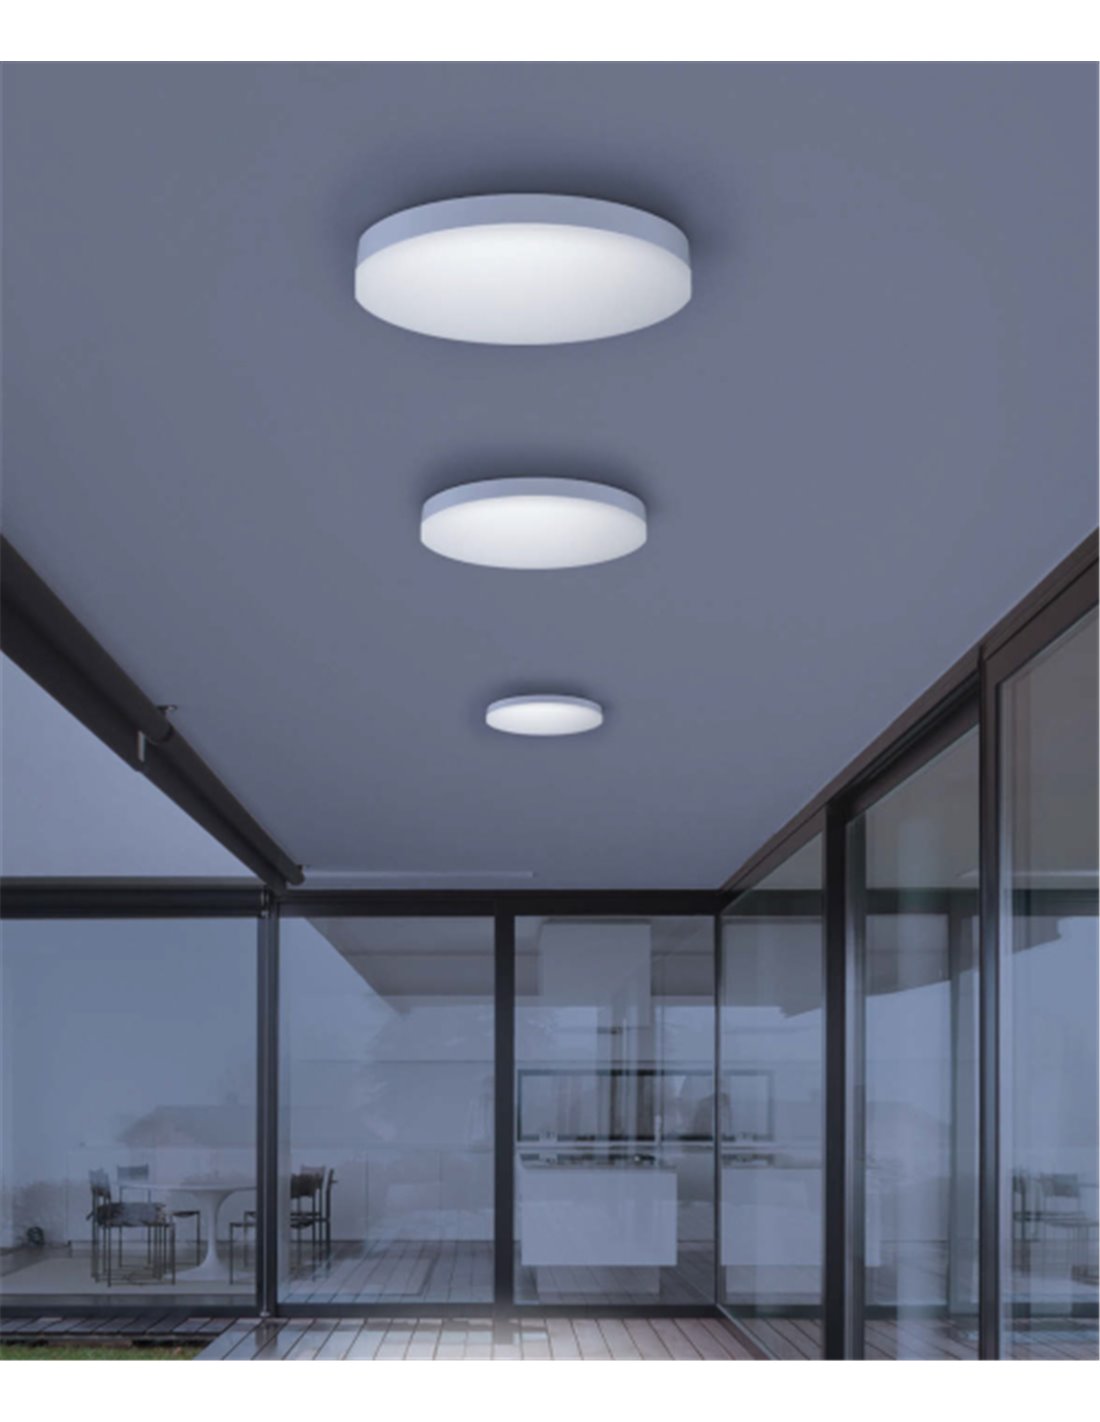 Iluminación con sensor de movimiento en edificio